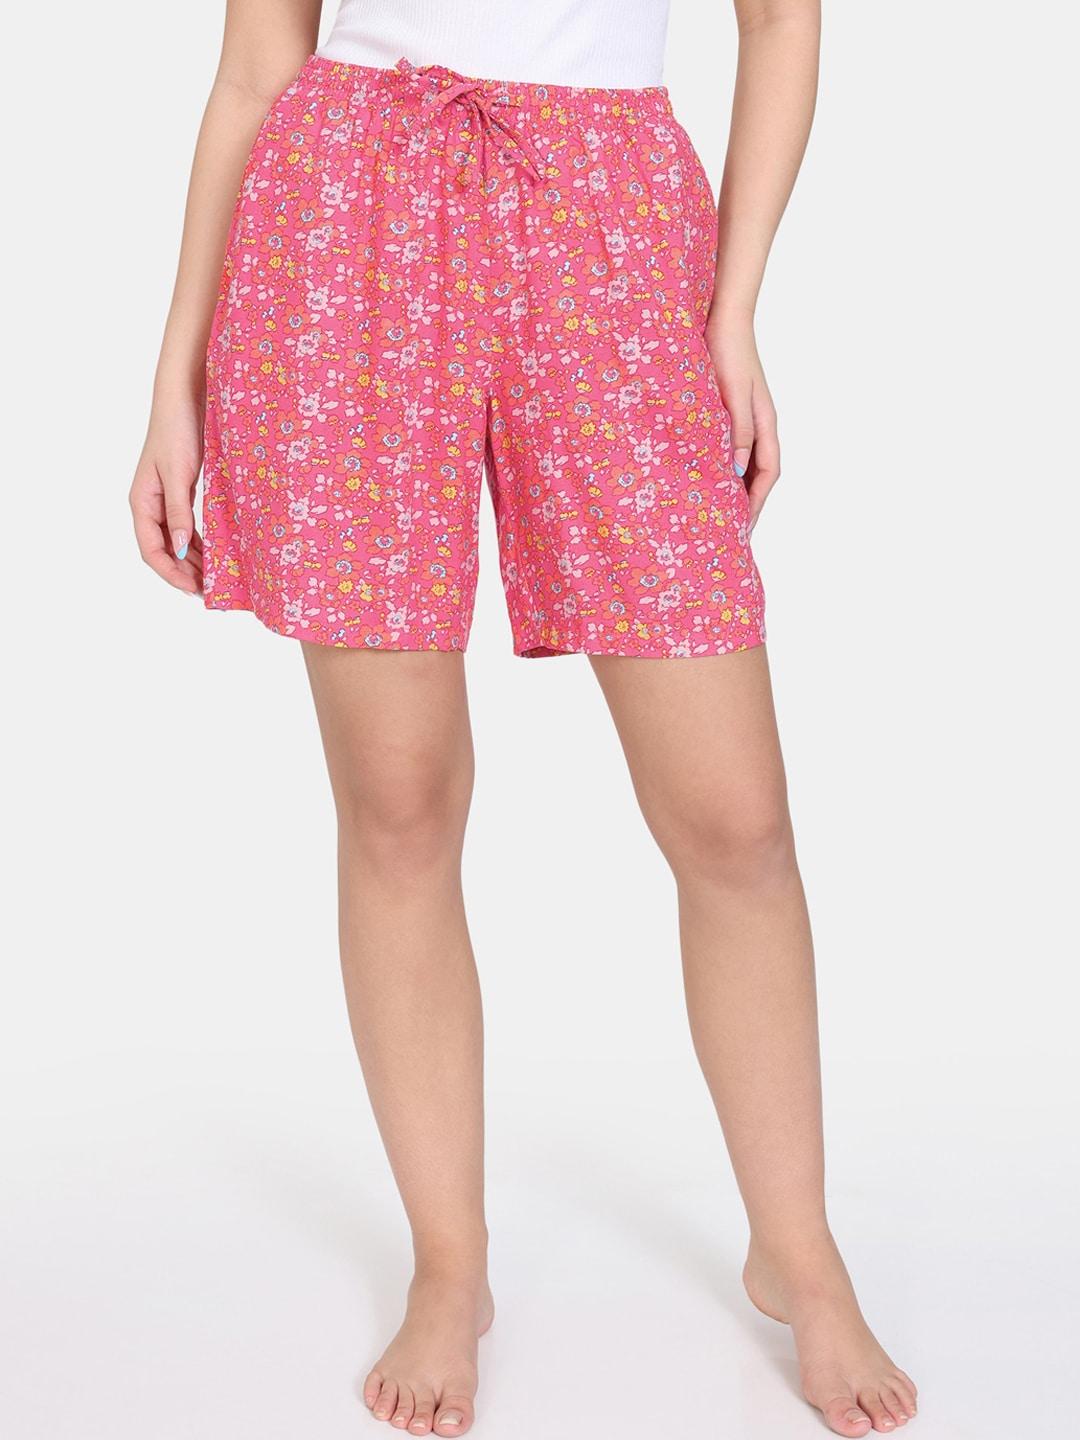 zivame-women-floral-printed-regular-shorts